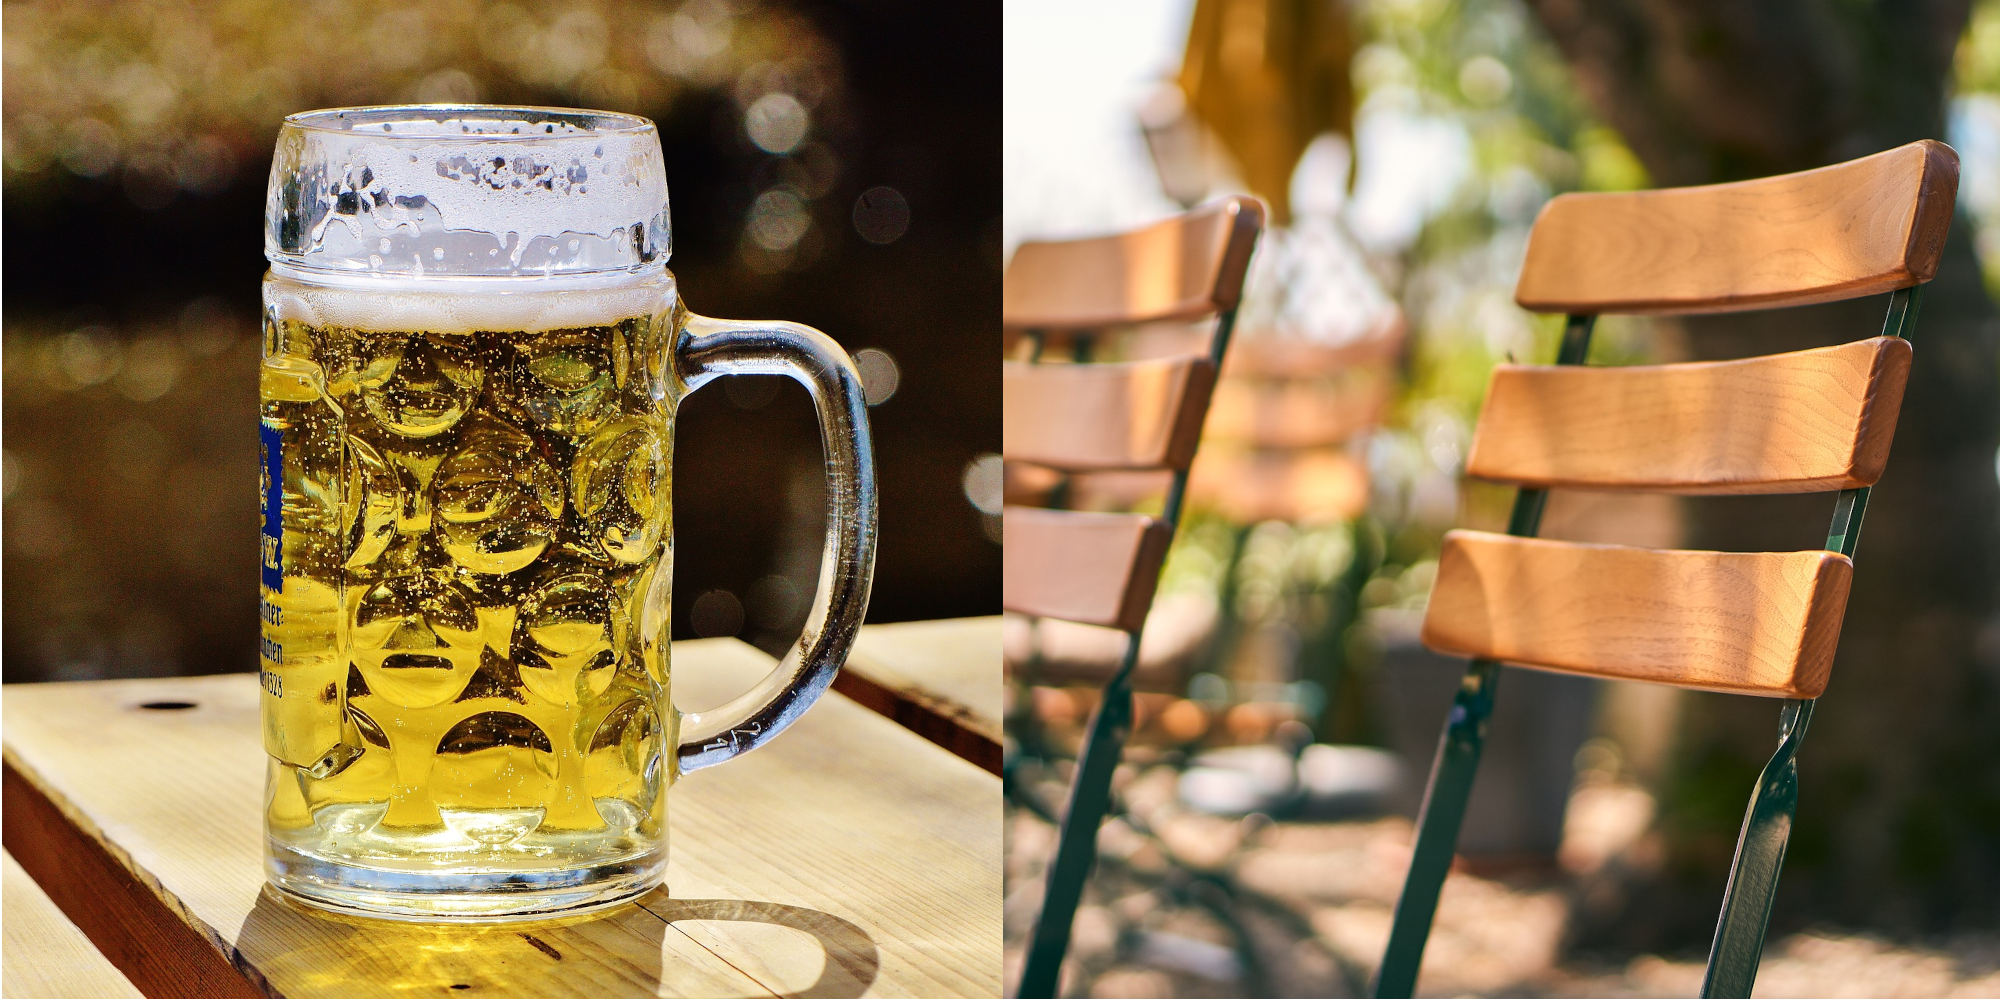 Ab in die Münchner Biergärten! Öffnungszeiten und Specials in der großen Übersicht